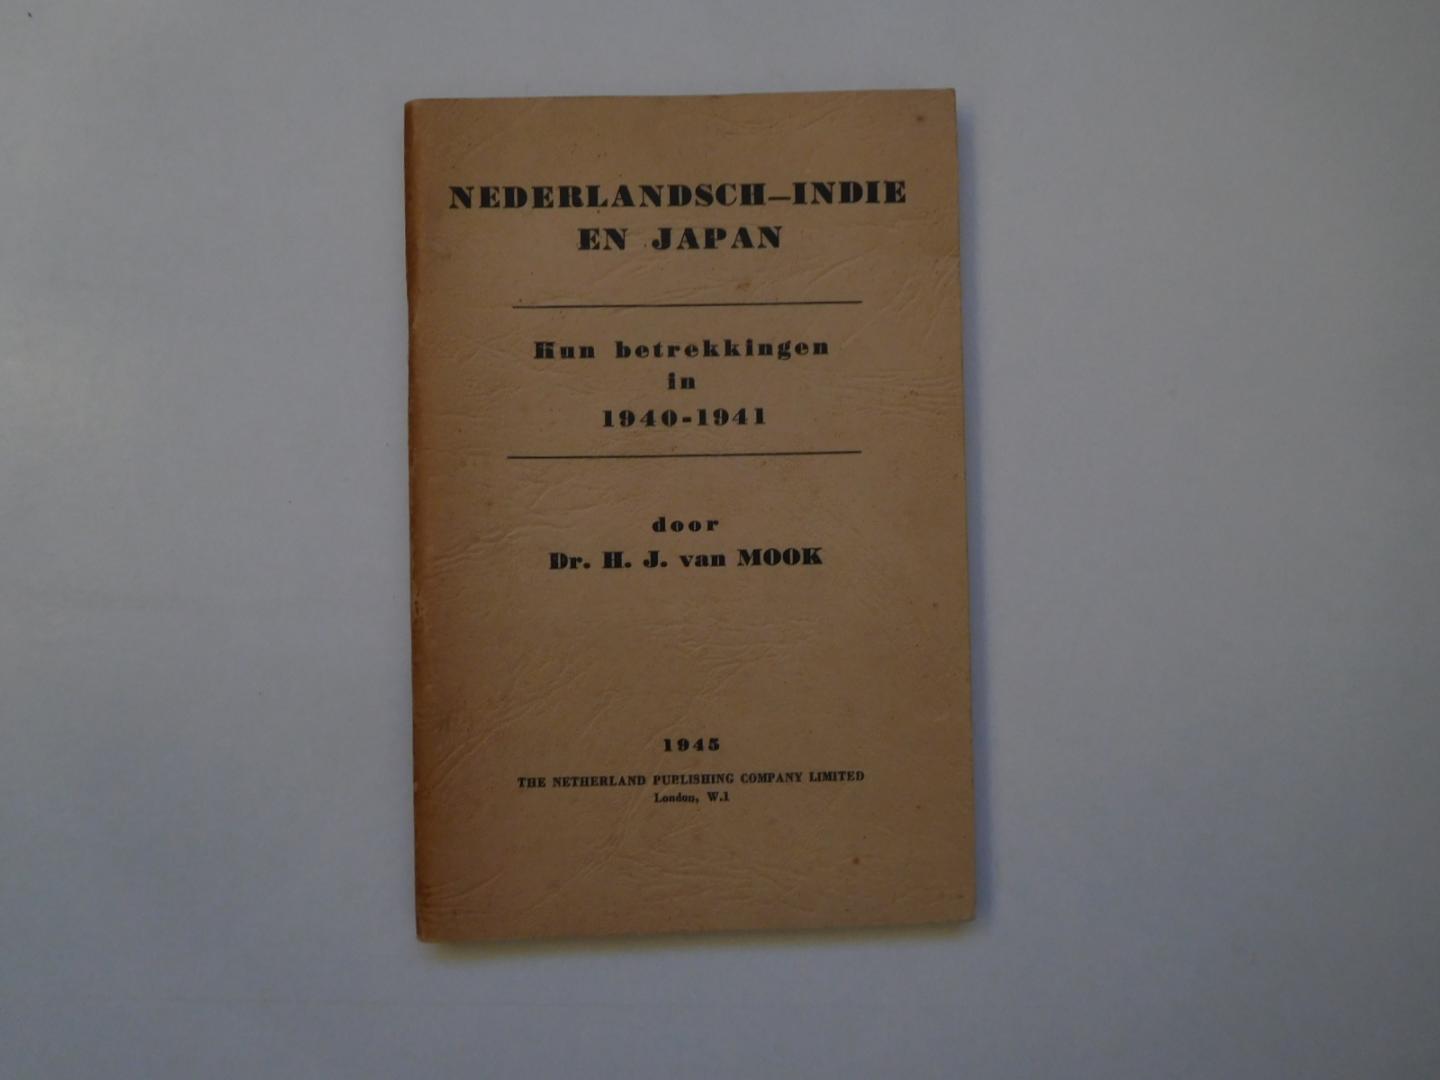 Mook, H.J. van - Nederlandsch-Indië en Japan, hun betrekkingen in 1940-1941